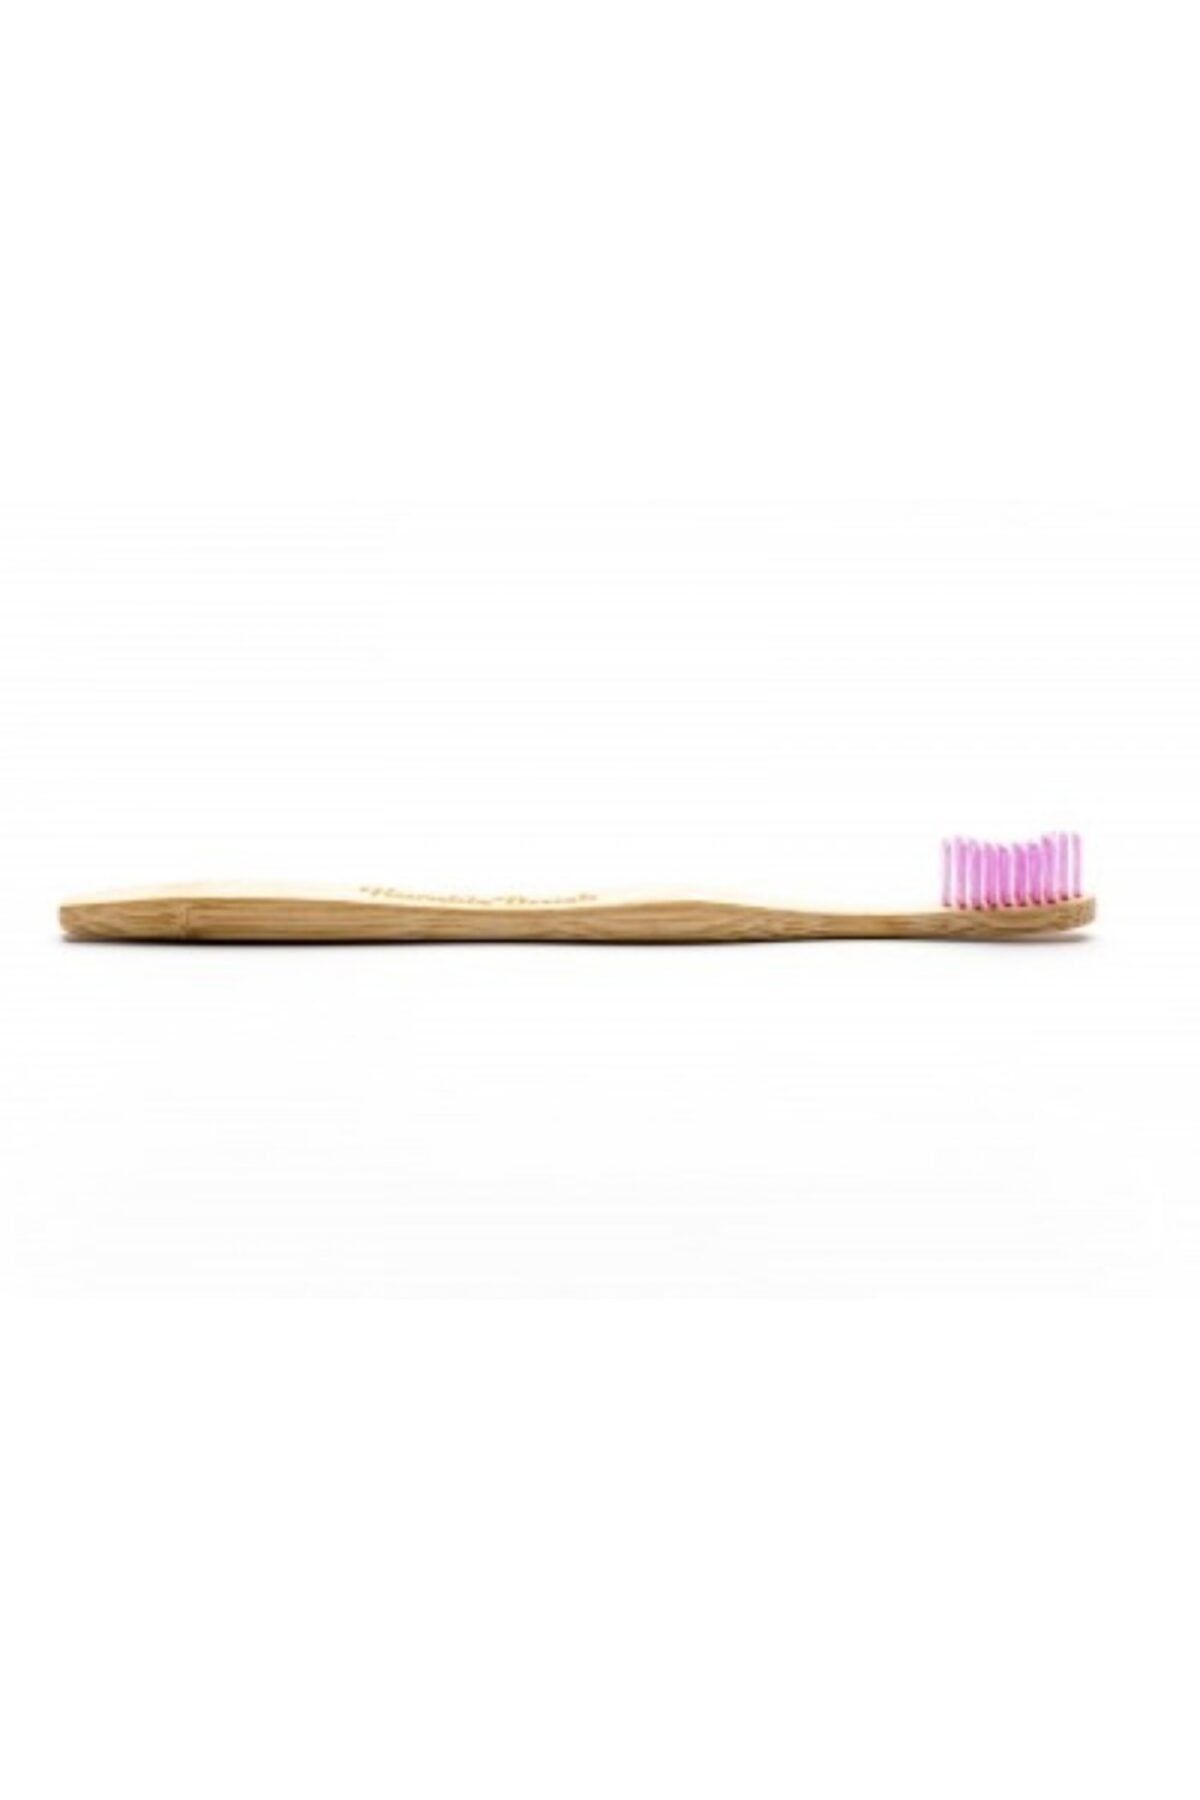 Humble Brush - Yetişkin Diş Fırçası Mor - Soft